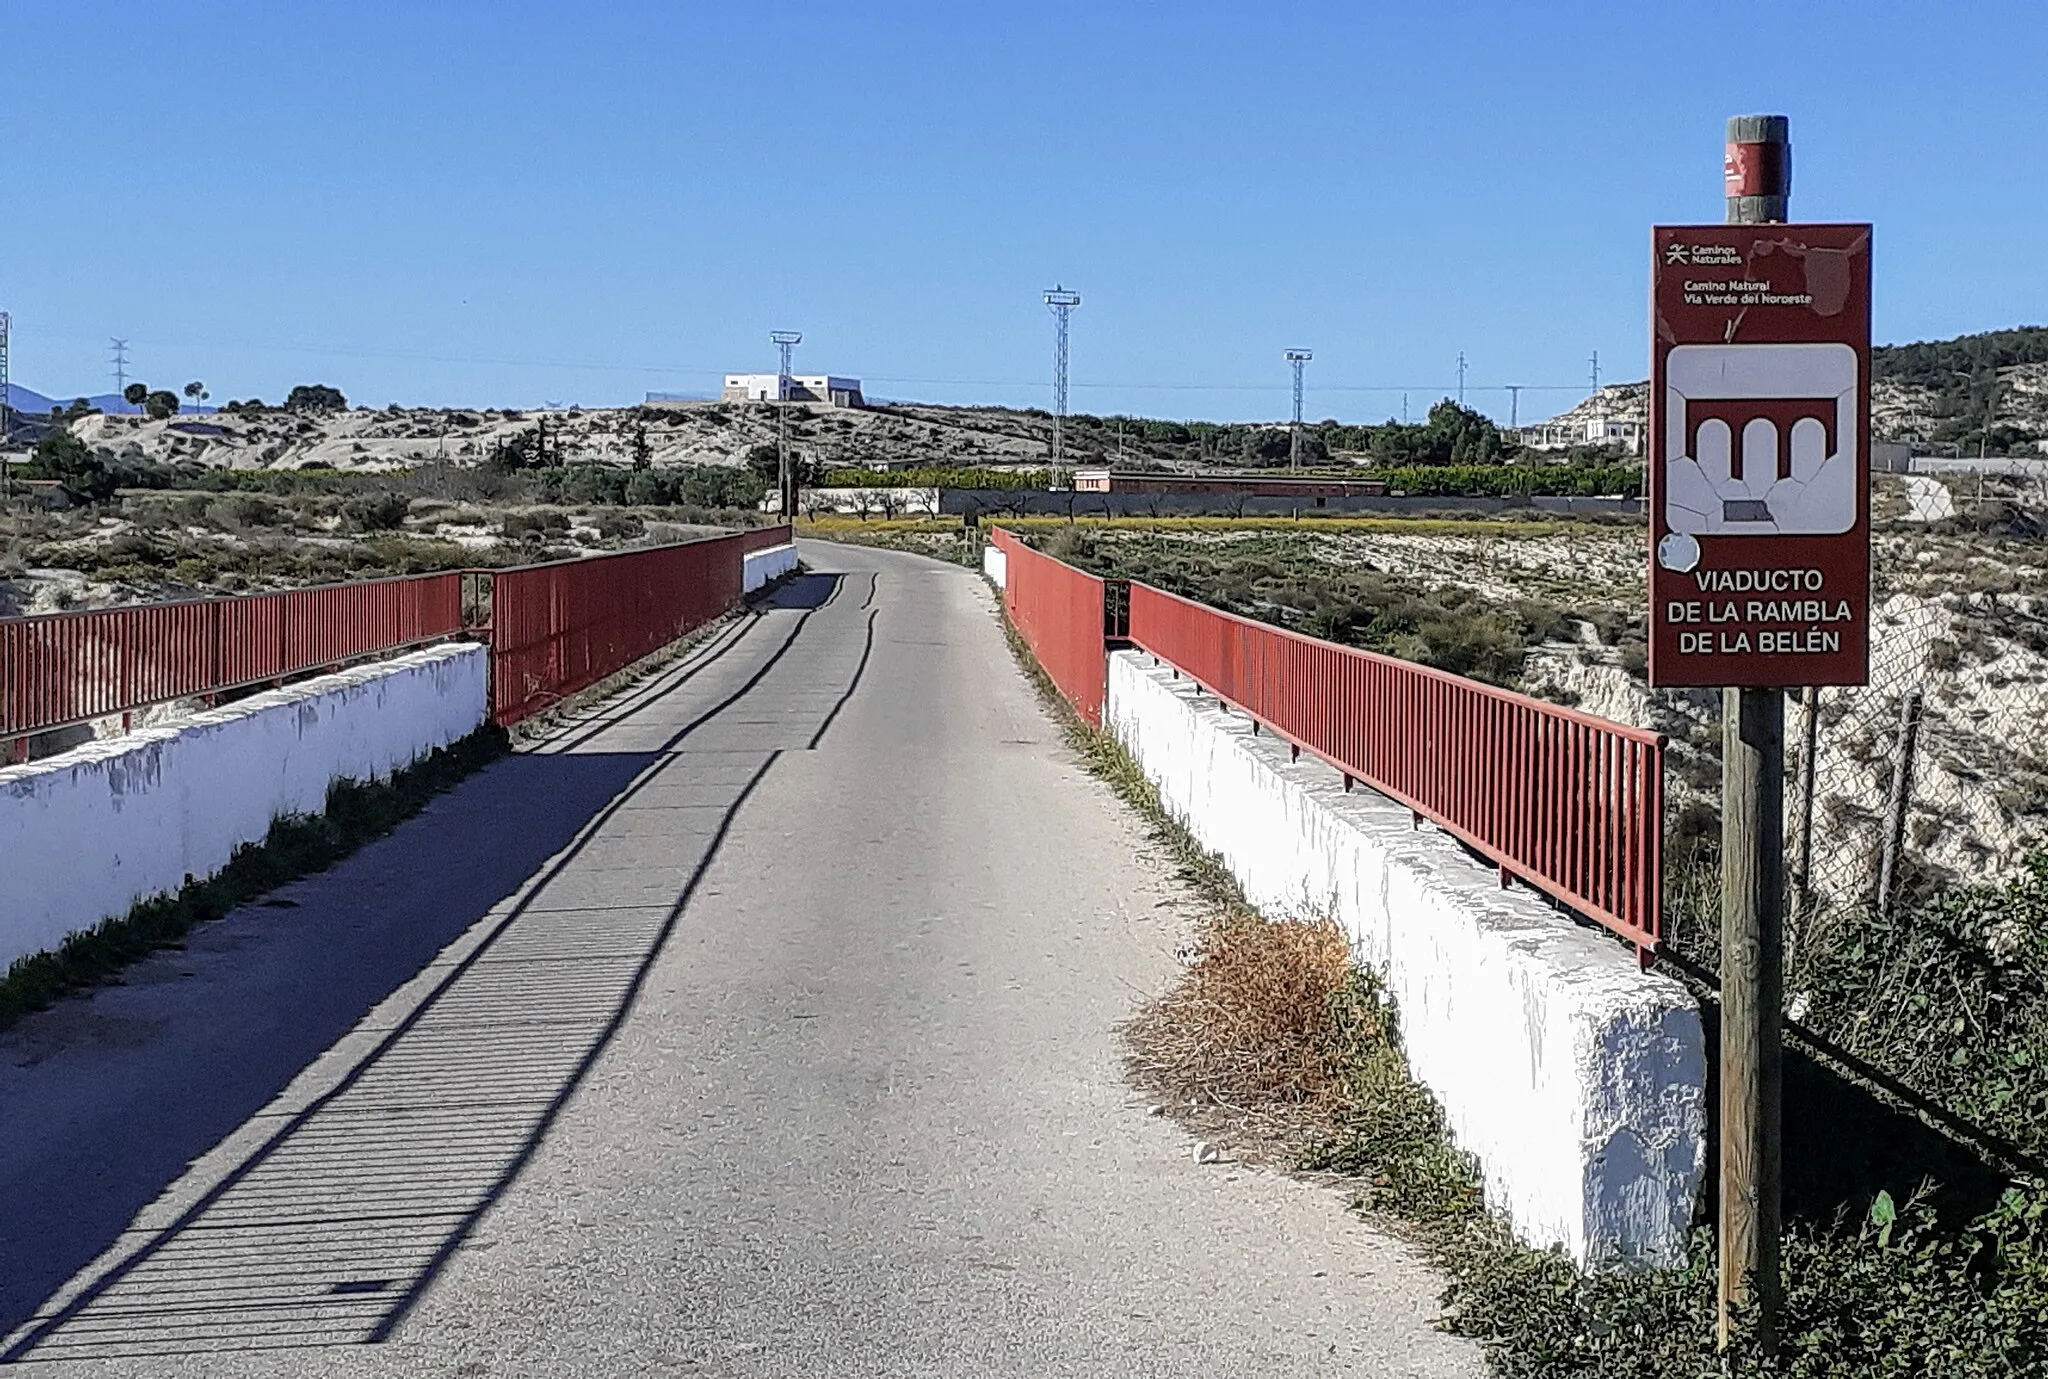 Photo showing: Viaducto de la rambla de Belen which is part of Via Verde del Noroeste